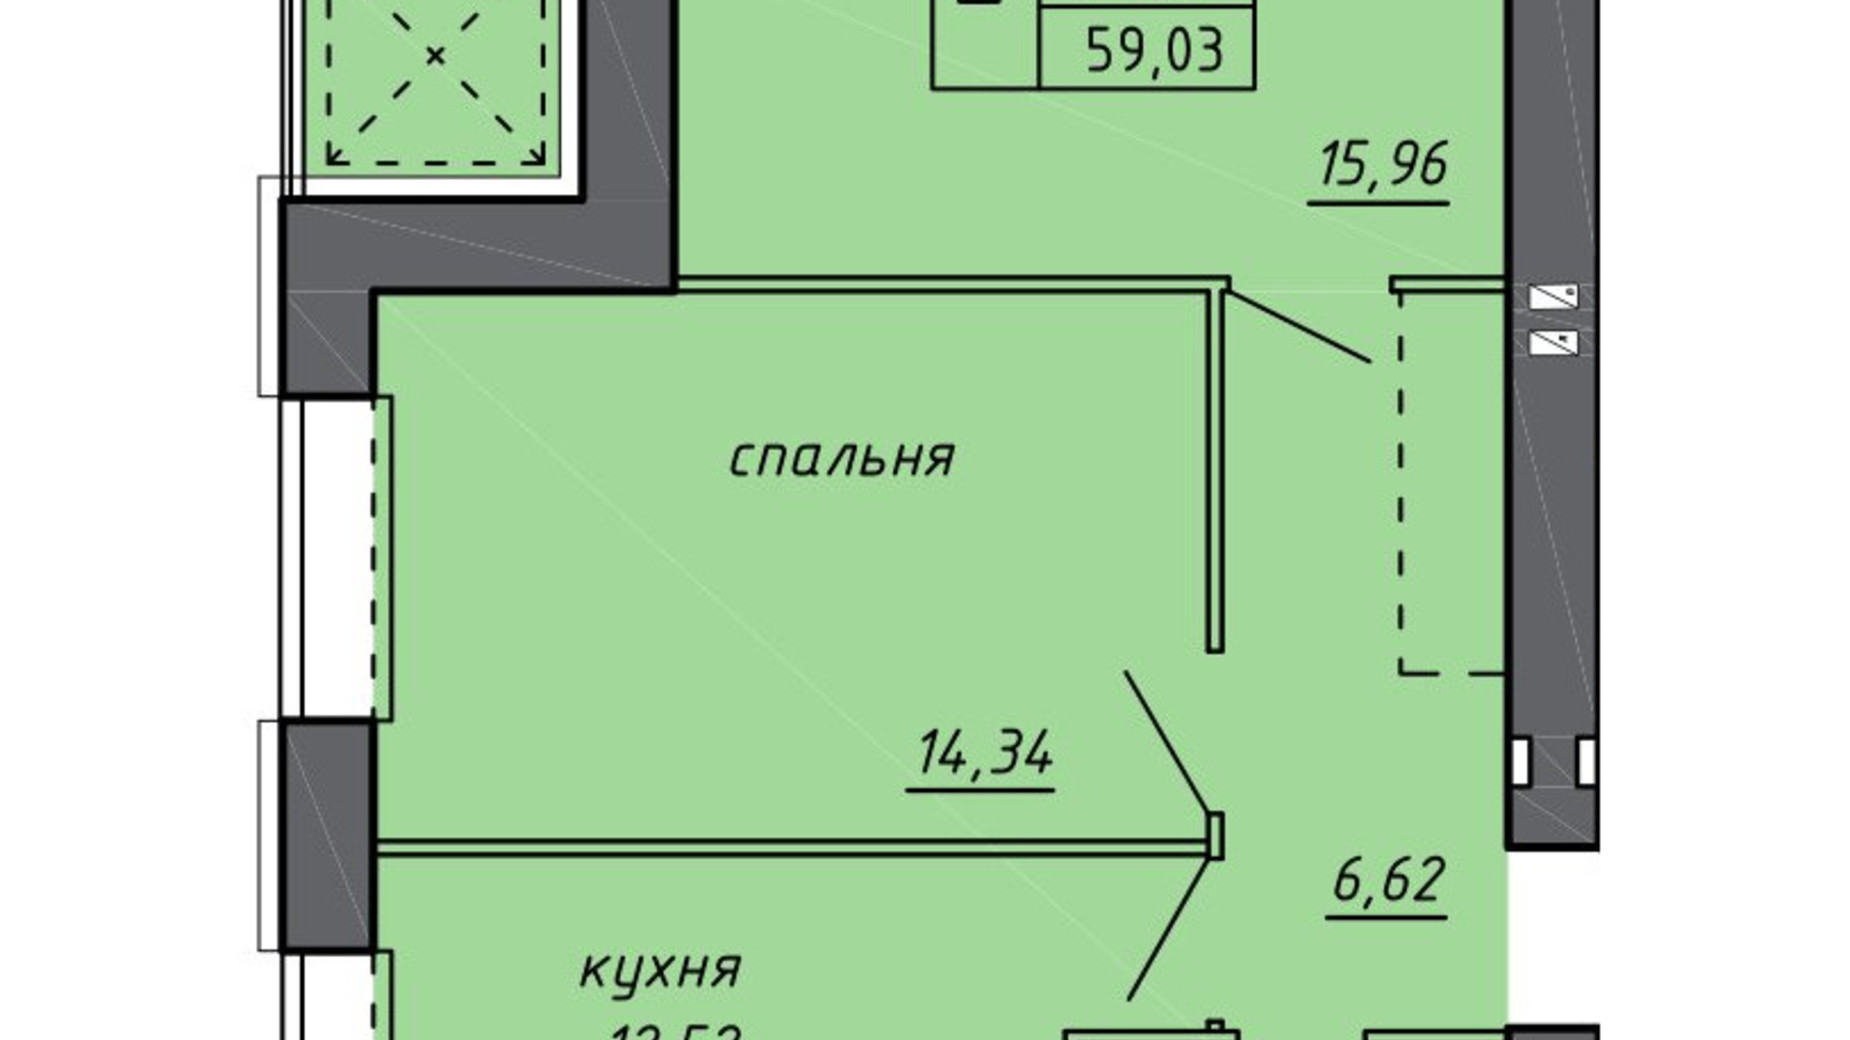 Планировка 2-комнатной квартиры в ЖК Новые Байковцы 59.03 м², фото 600703